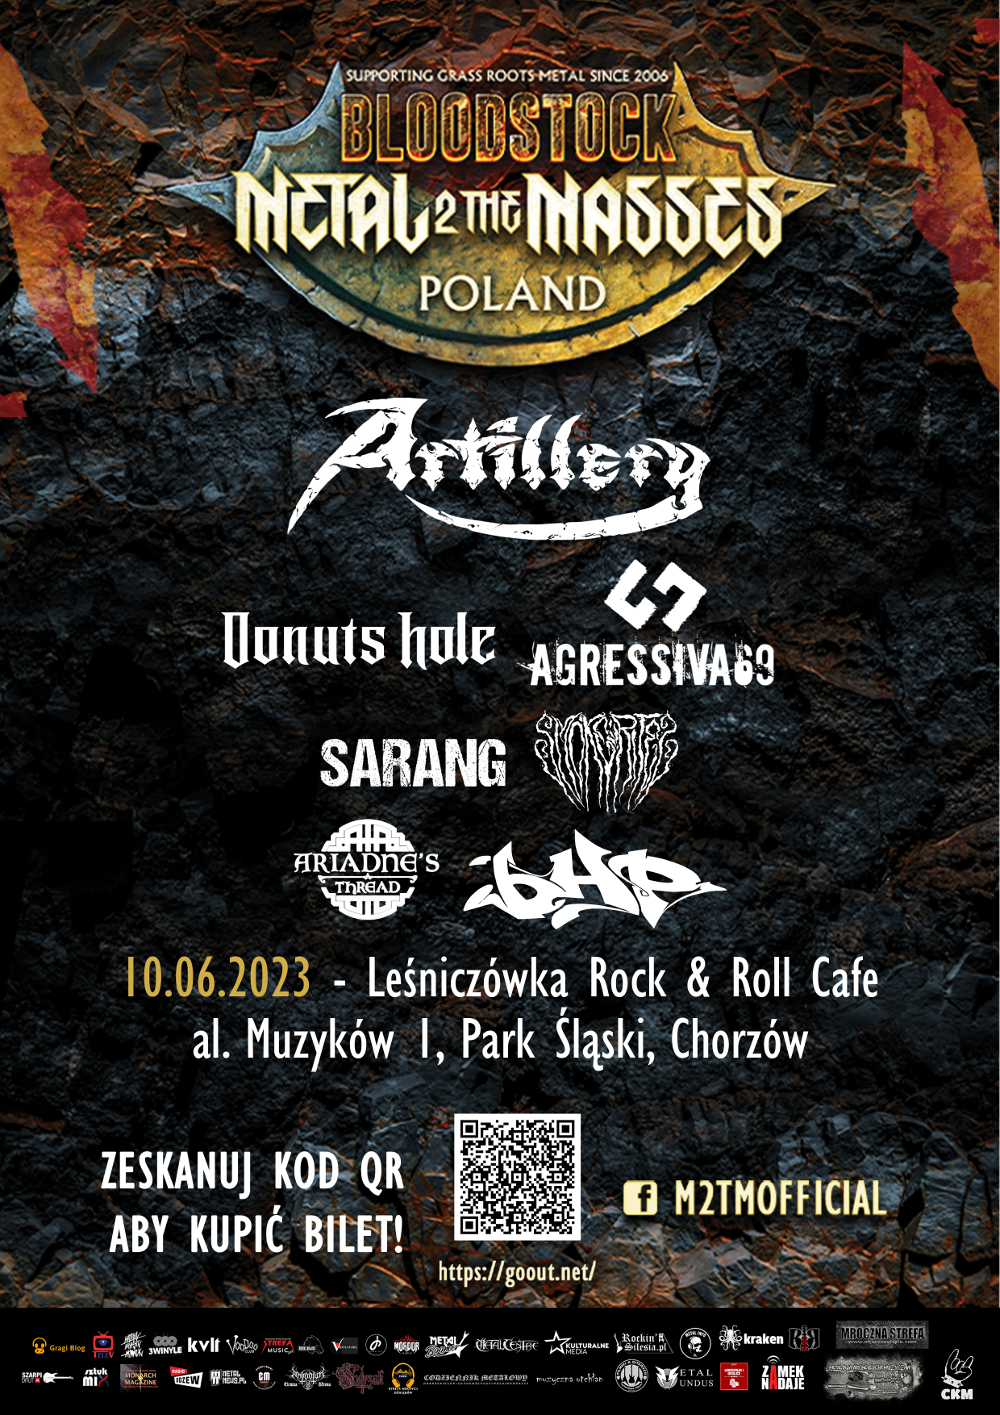 Festiwal BLOODSTOCK METAL 2 THE MASSES w Chorzowie! 